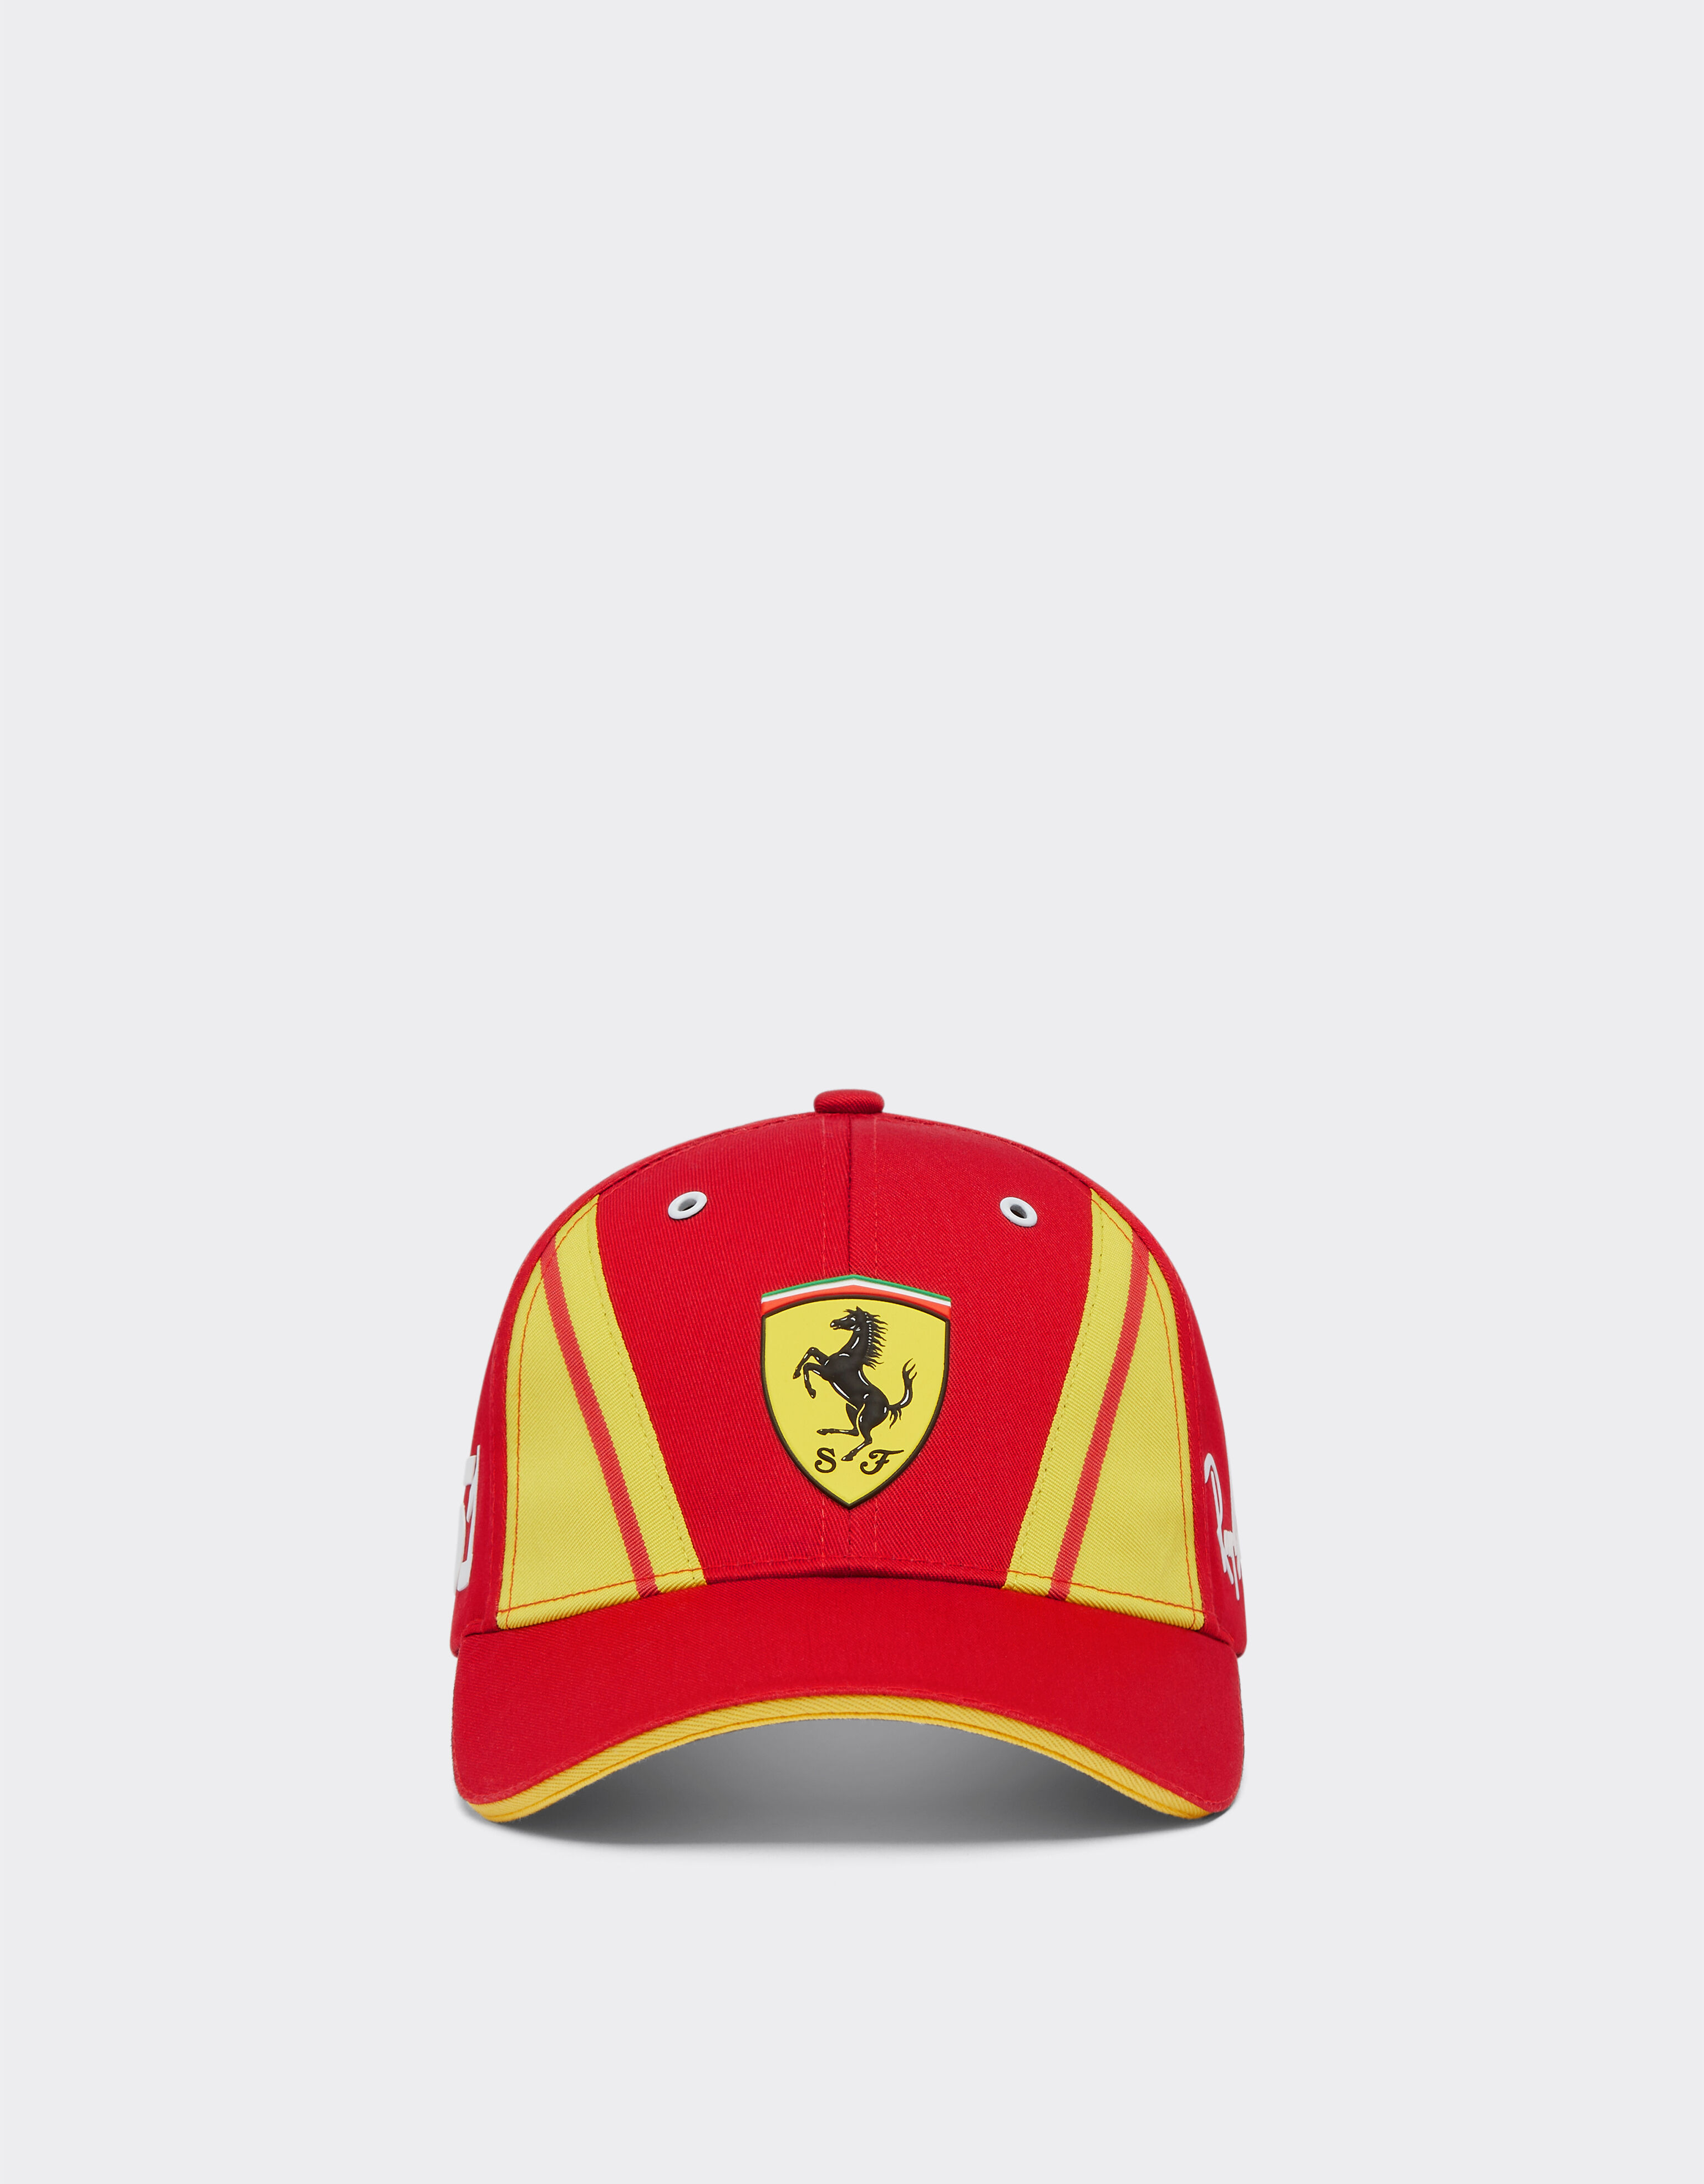 ${brand} Casquette Ferrari Hypercar 51 ${colorDescription} ${masterID}